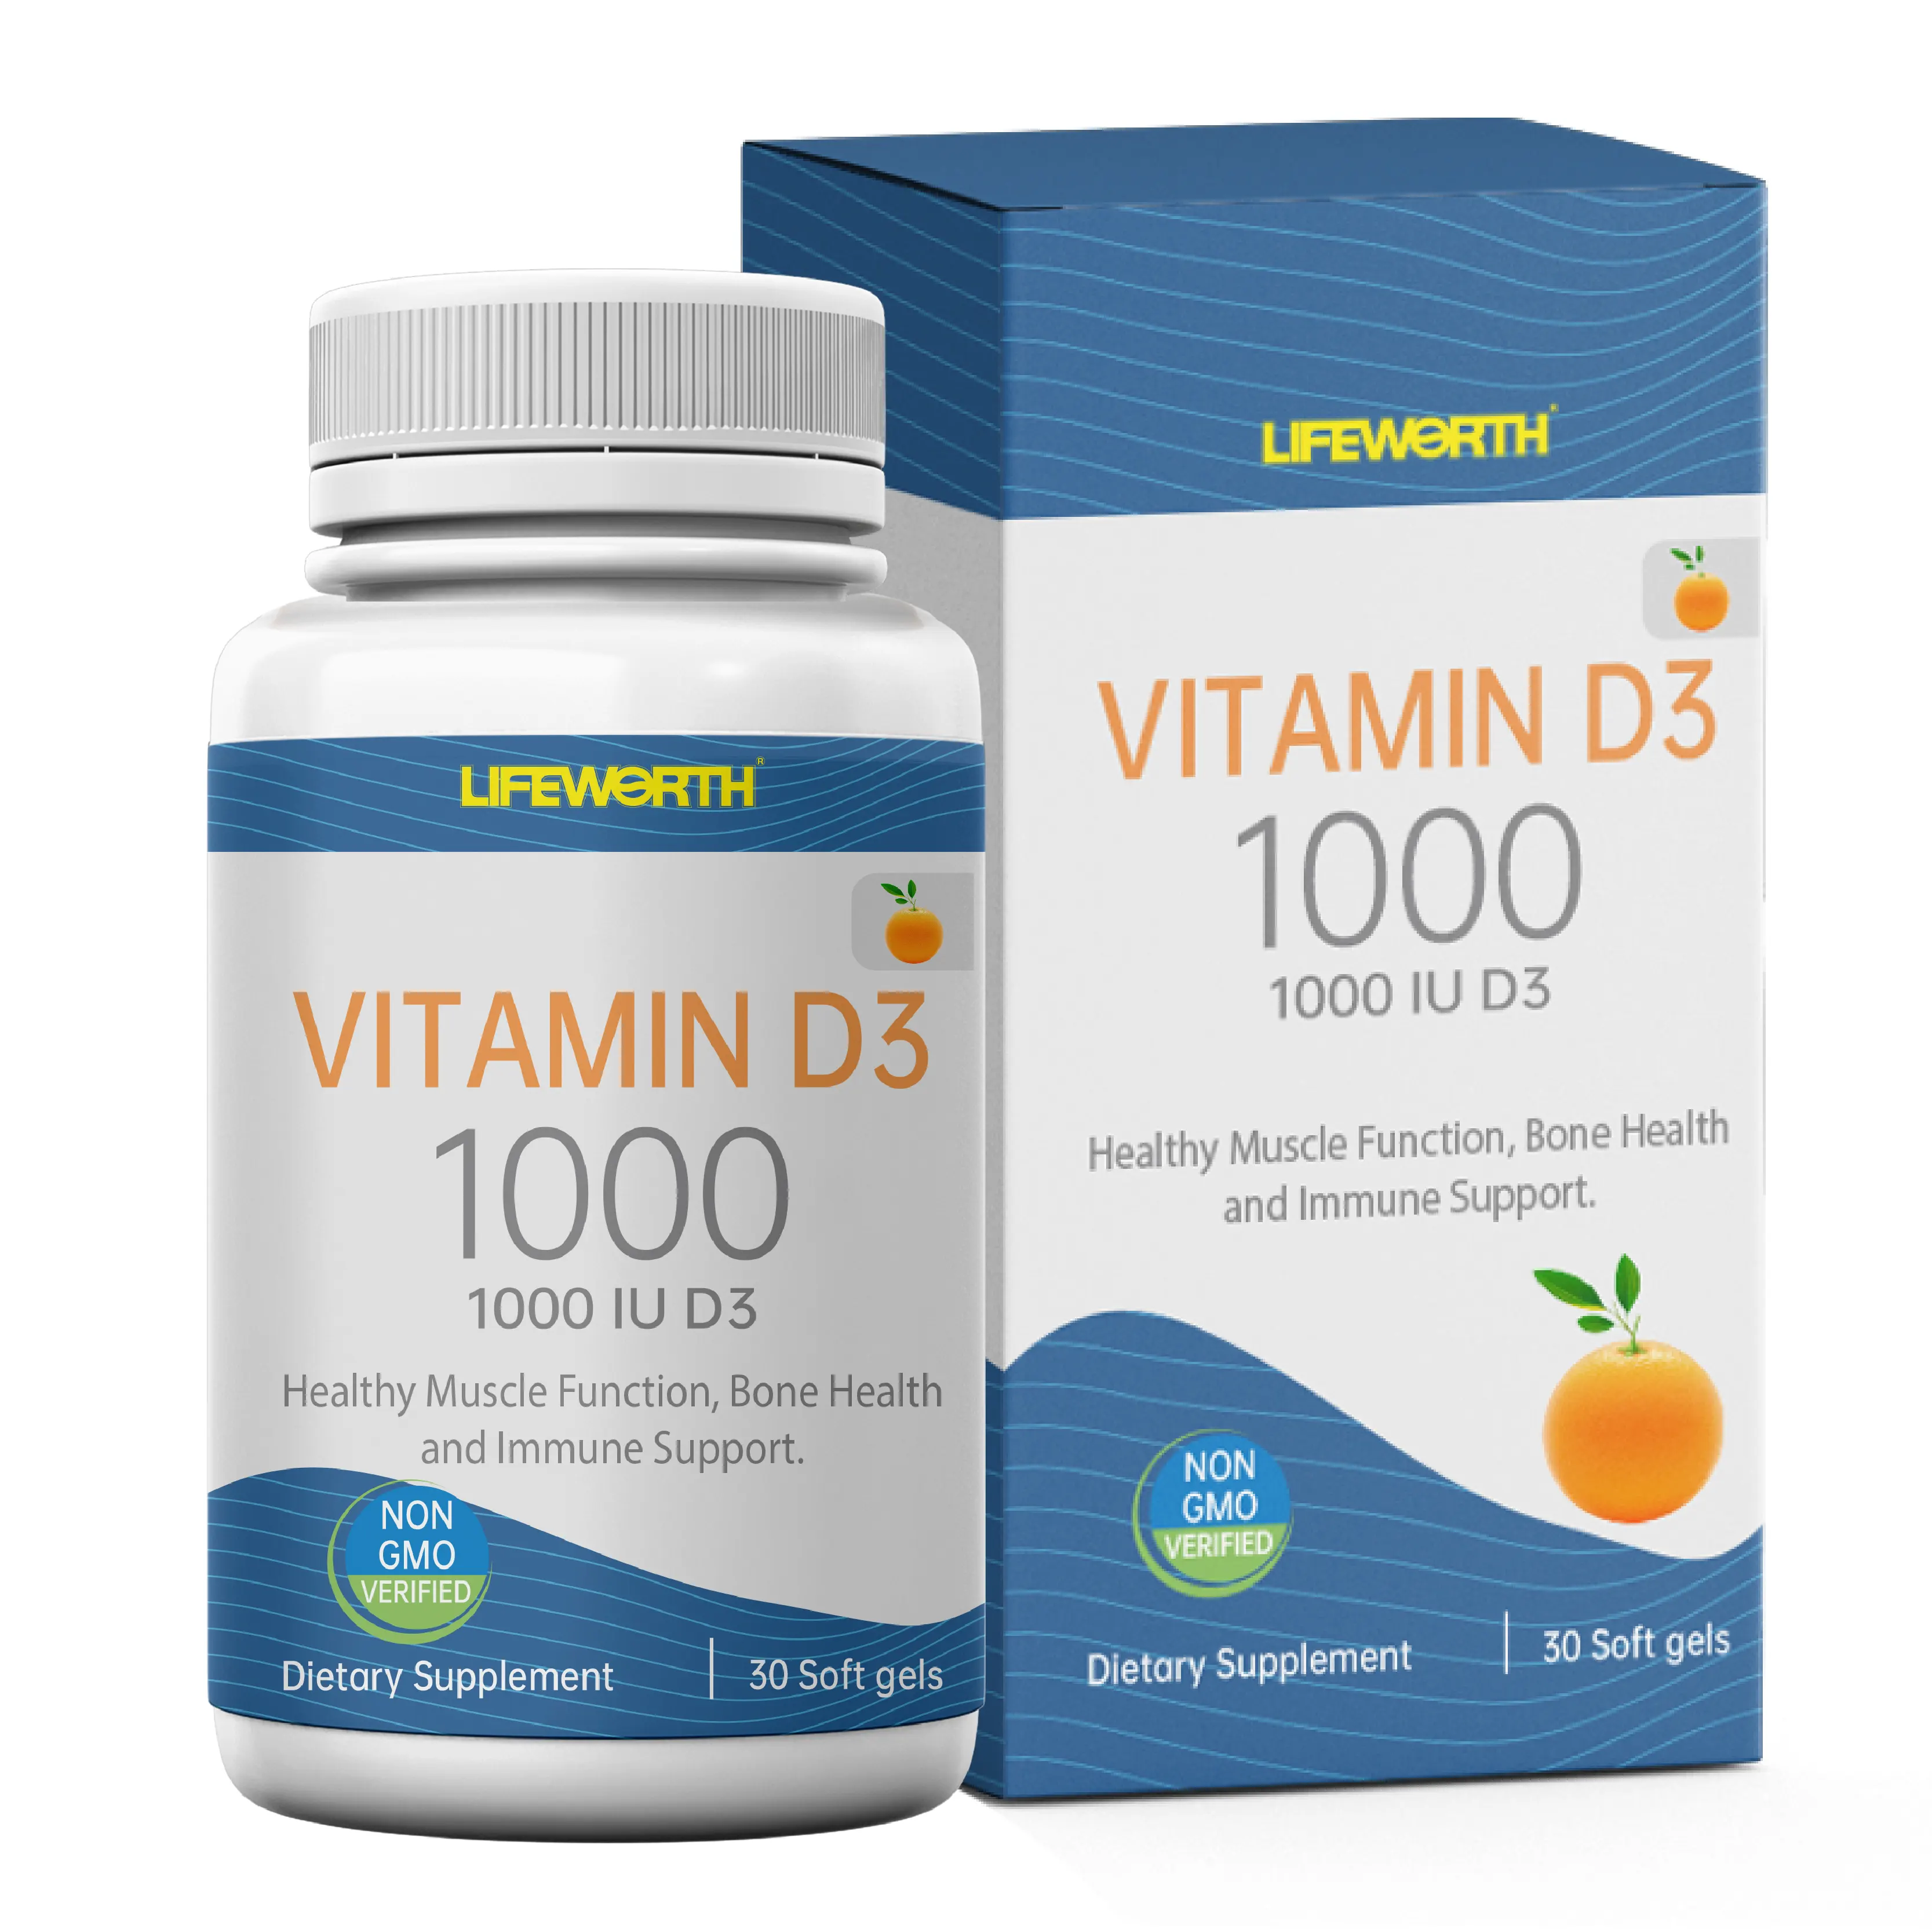 LIFEWORTH calcium supplements vitamin b12 D3 liquid capsules multi vitamin supplement